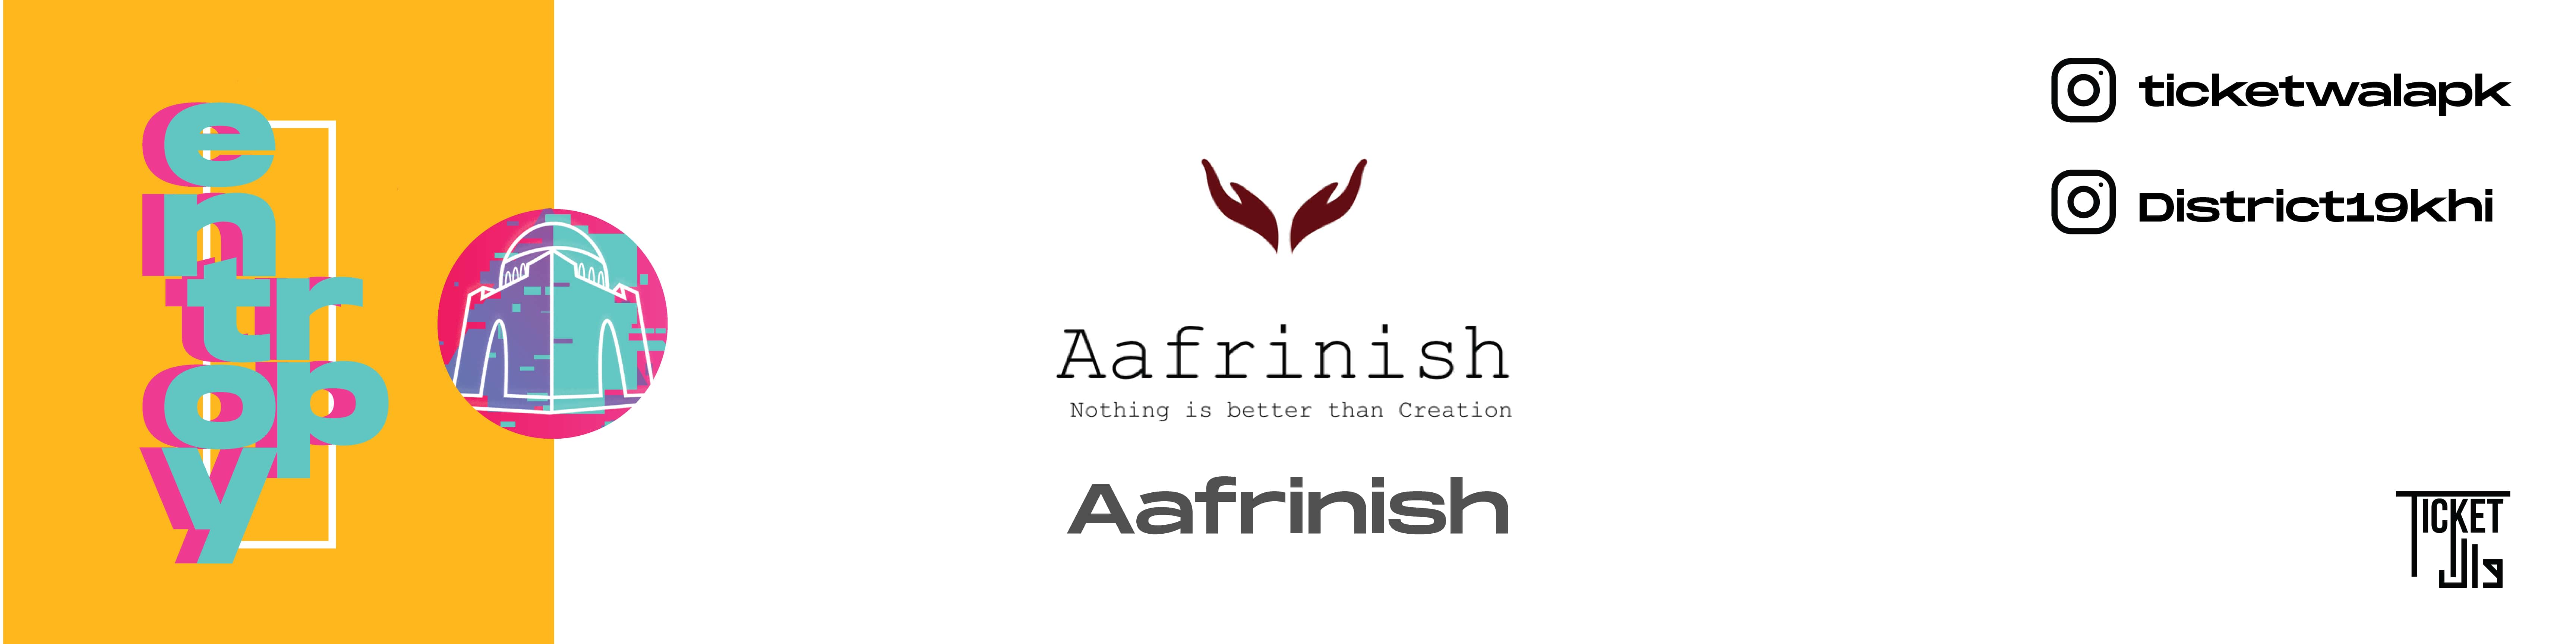 Aafrinish-min